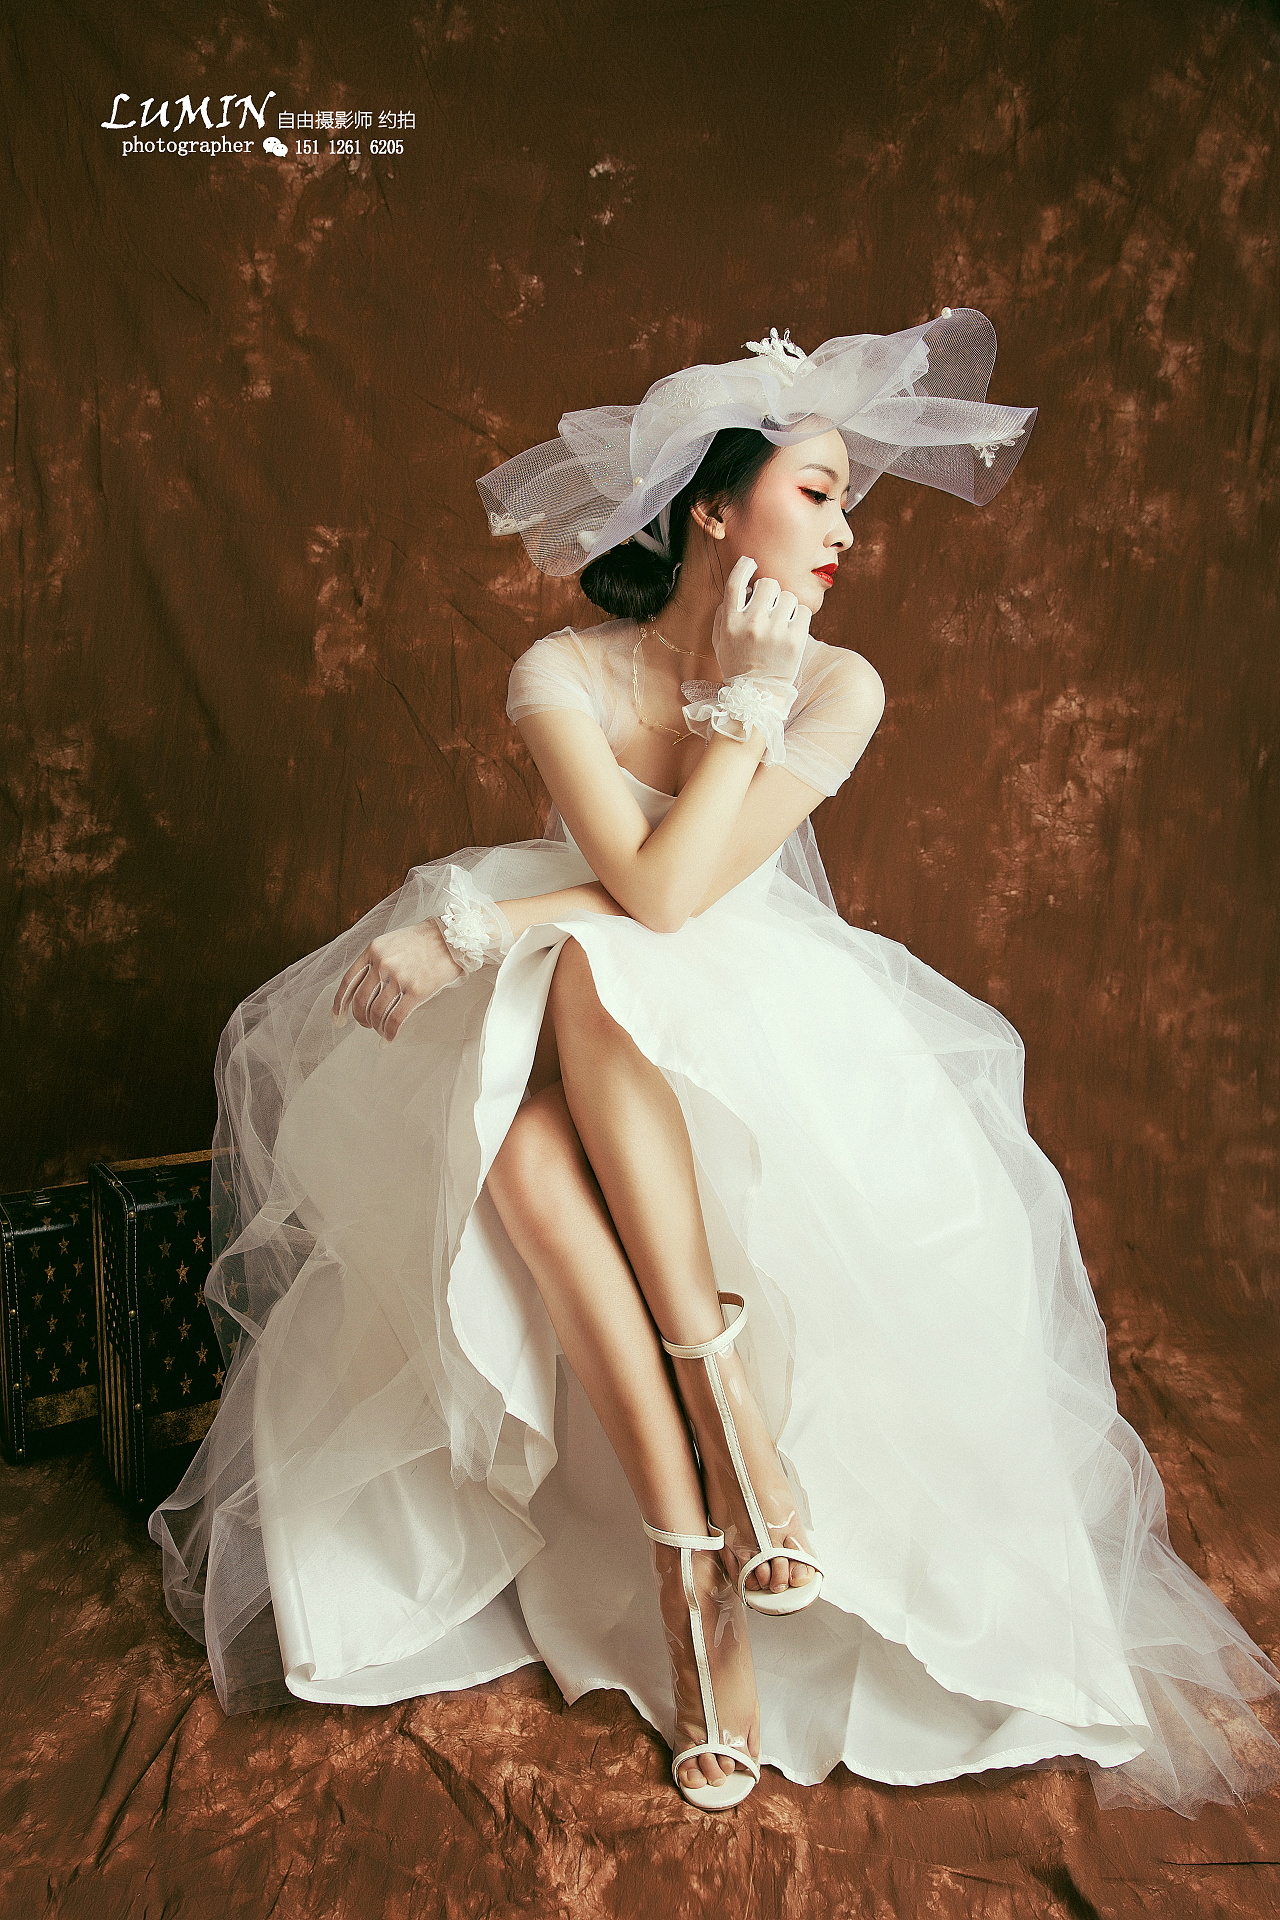 全新《DAISY》系列 - 明星范 - 古摄影婚纱艺术-古摄影成都婚纱摄影艺术摄影网